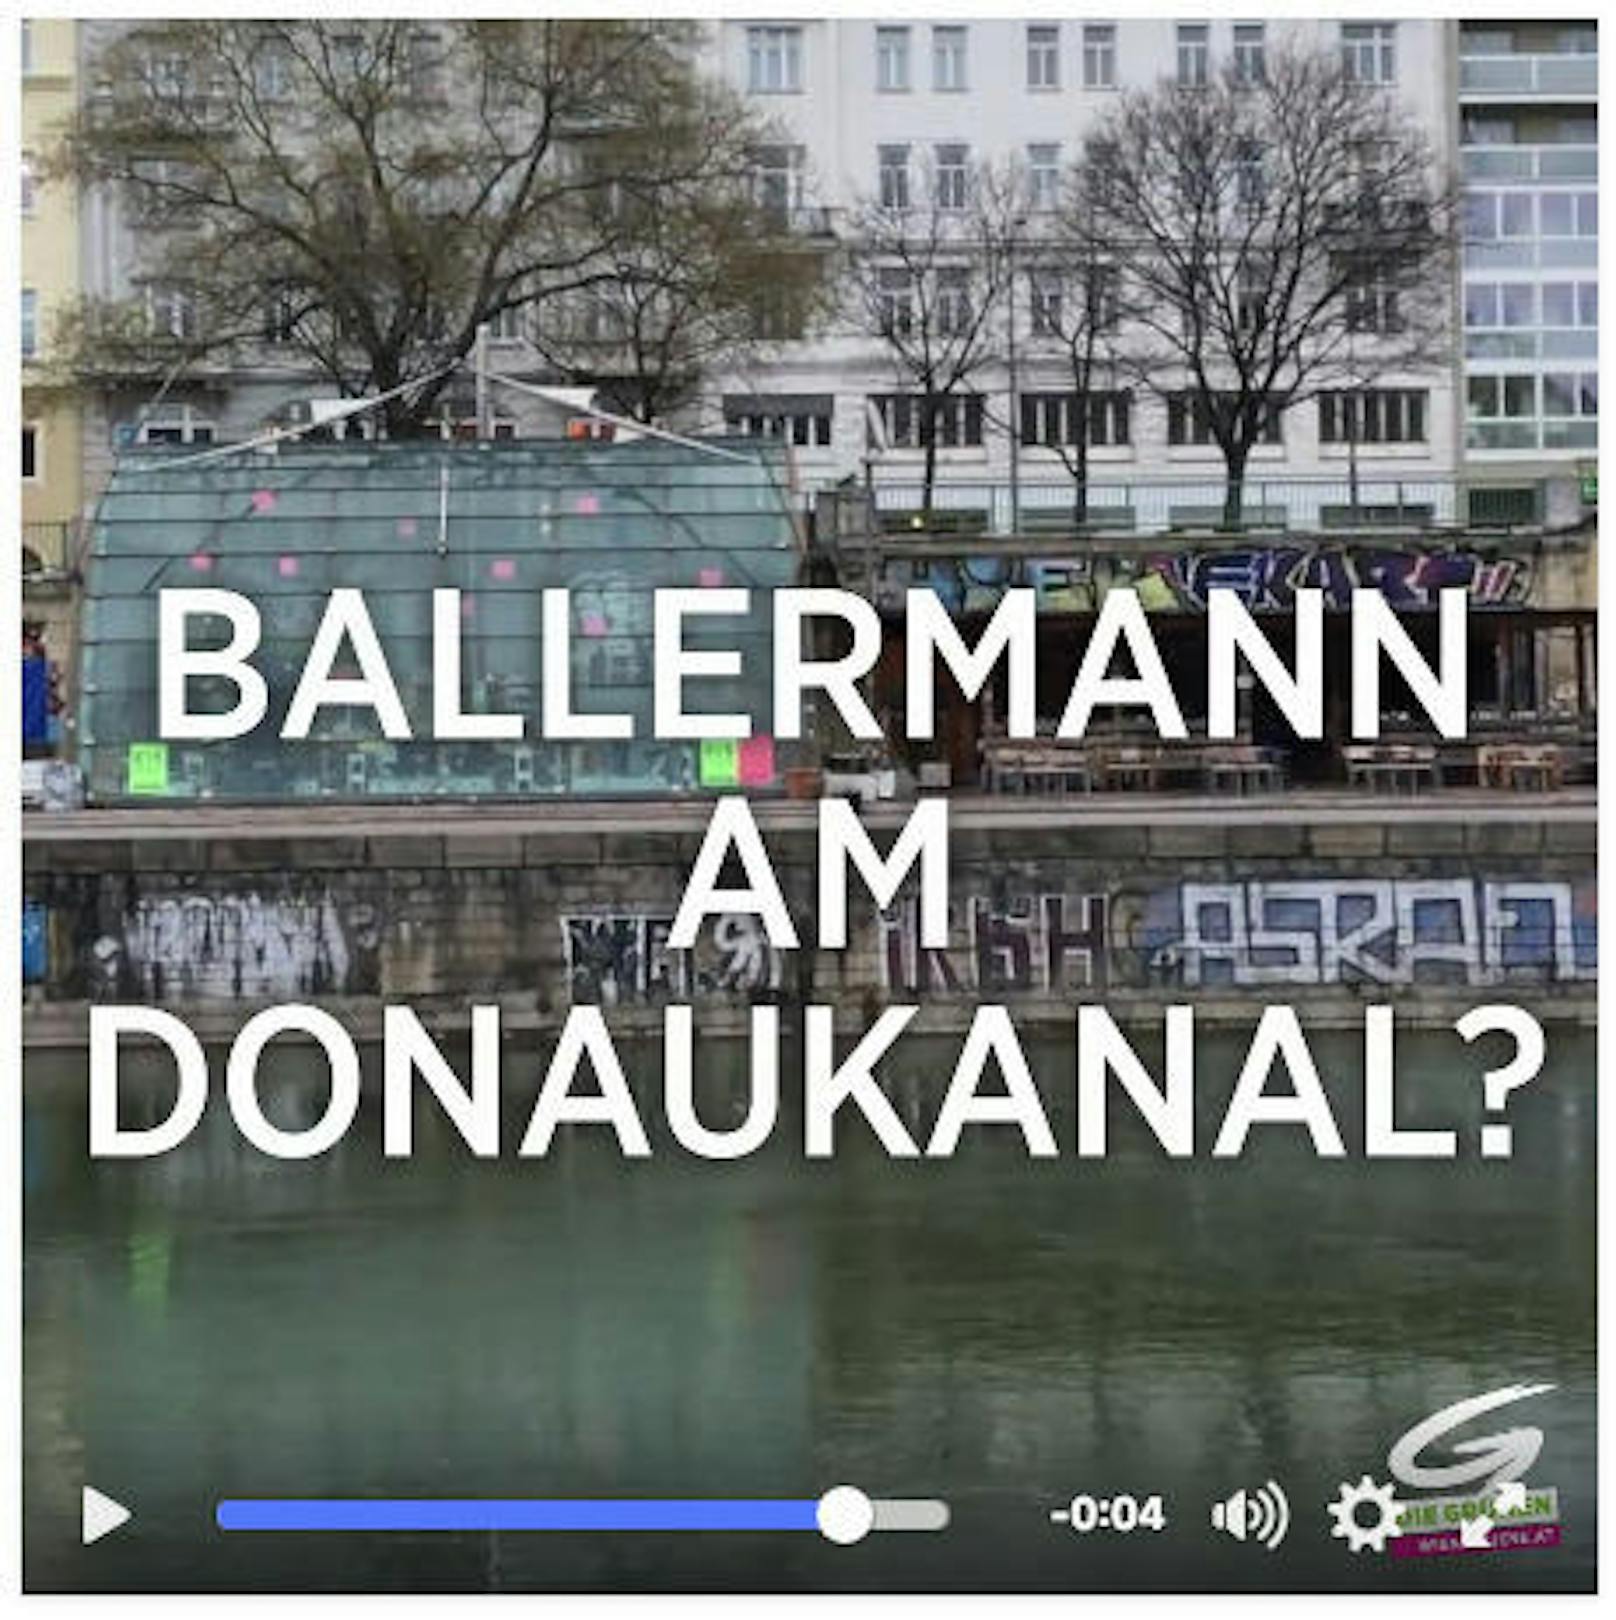 Mit ihrem Facebook-Aufruf suchen die Grünen Unterstützer, die auch keinen Donaukanal als neuen Ballermann wollen. (c) Grüne Wien